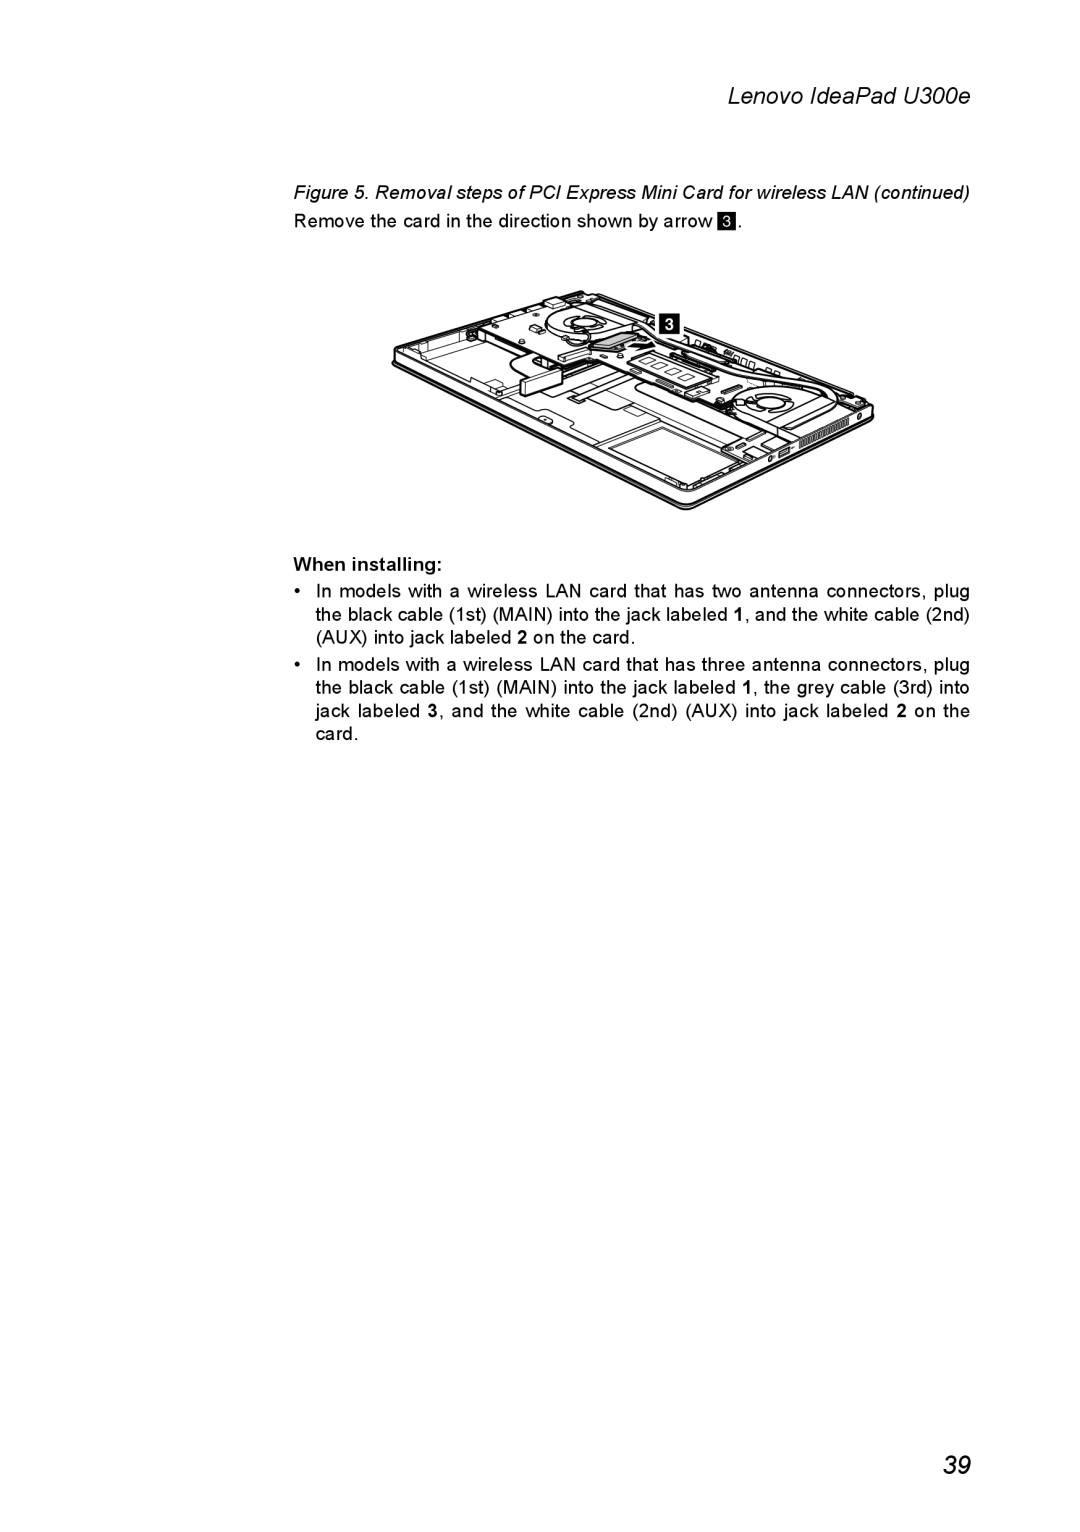 Lenovo U300E manual When installing, Lenovo IdeaPad U300e 